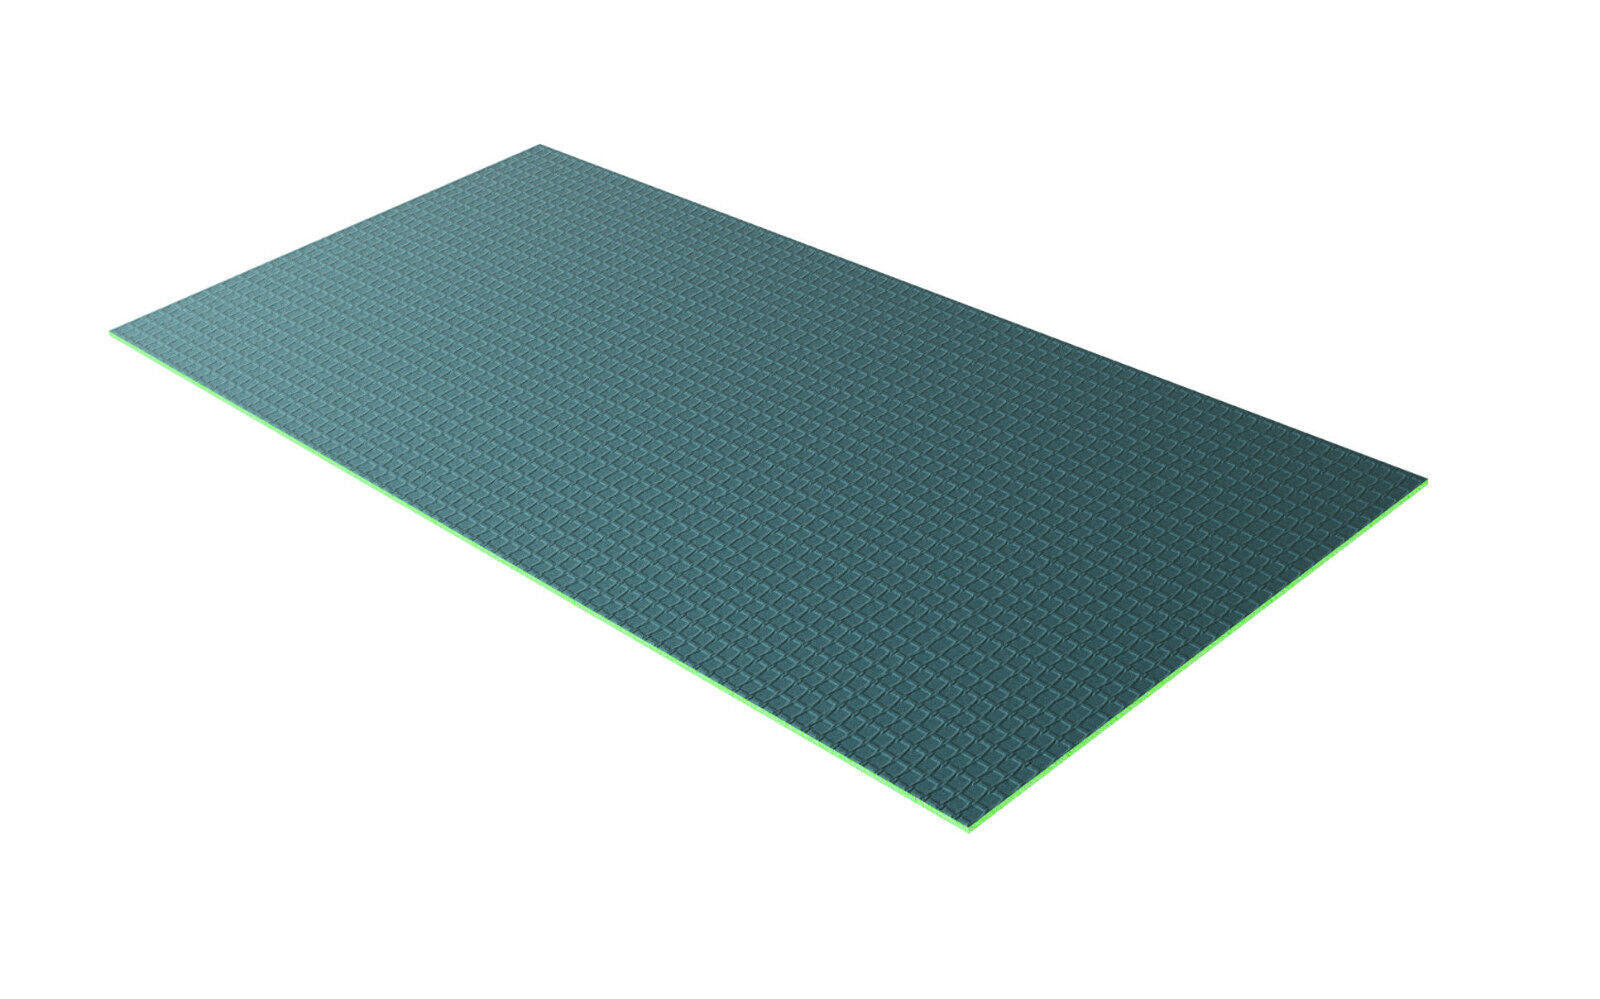 Shower Enclosure Tile Backer Boards 1200x600/2500x600/6/25/40mm